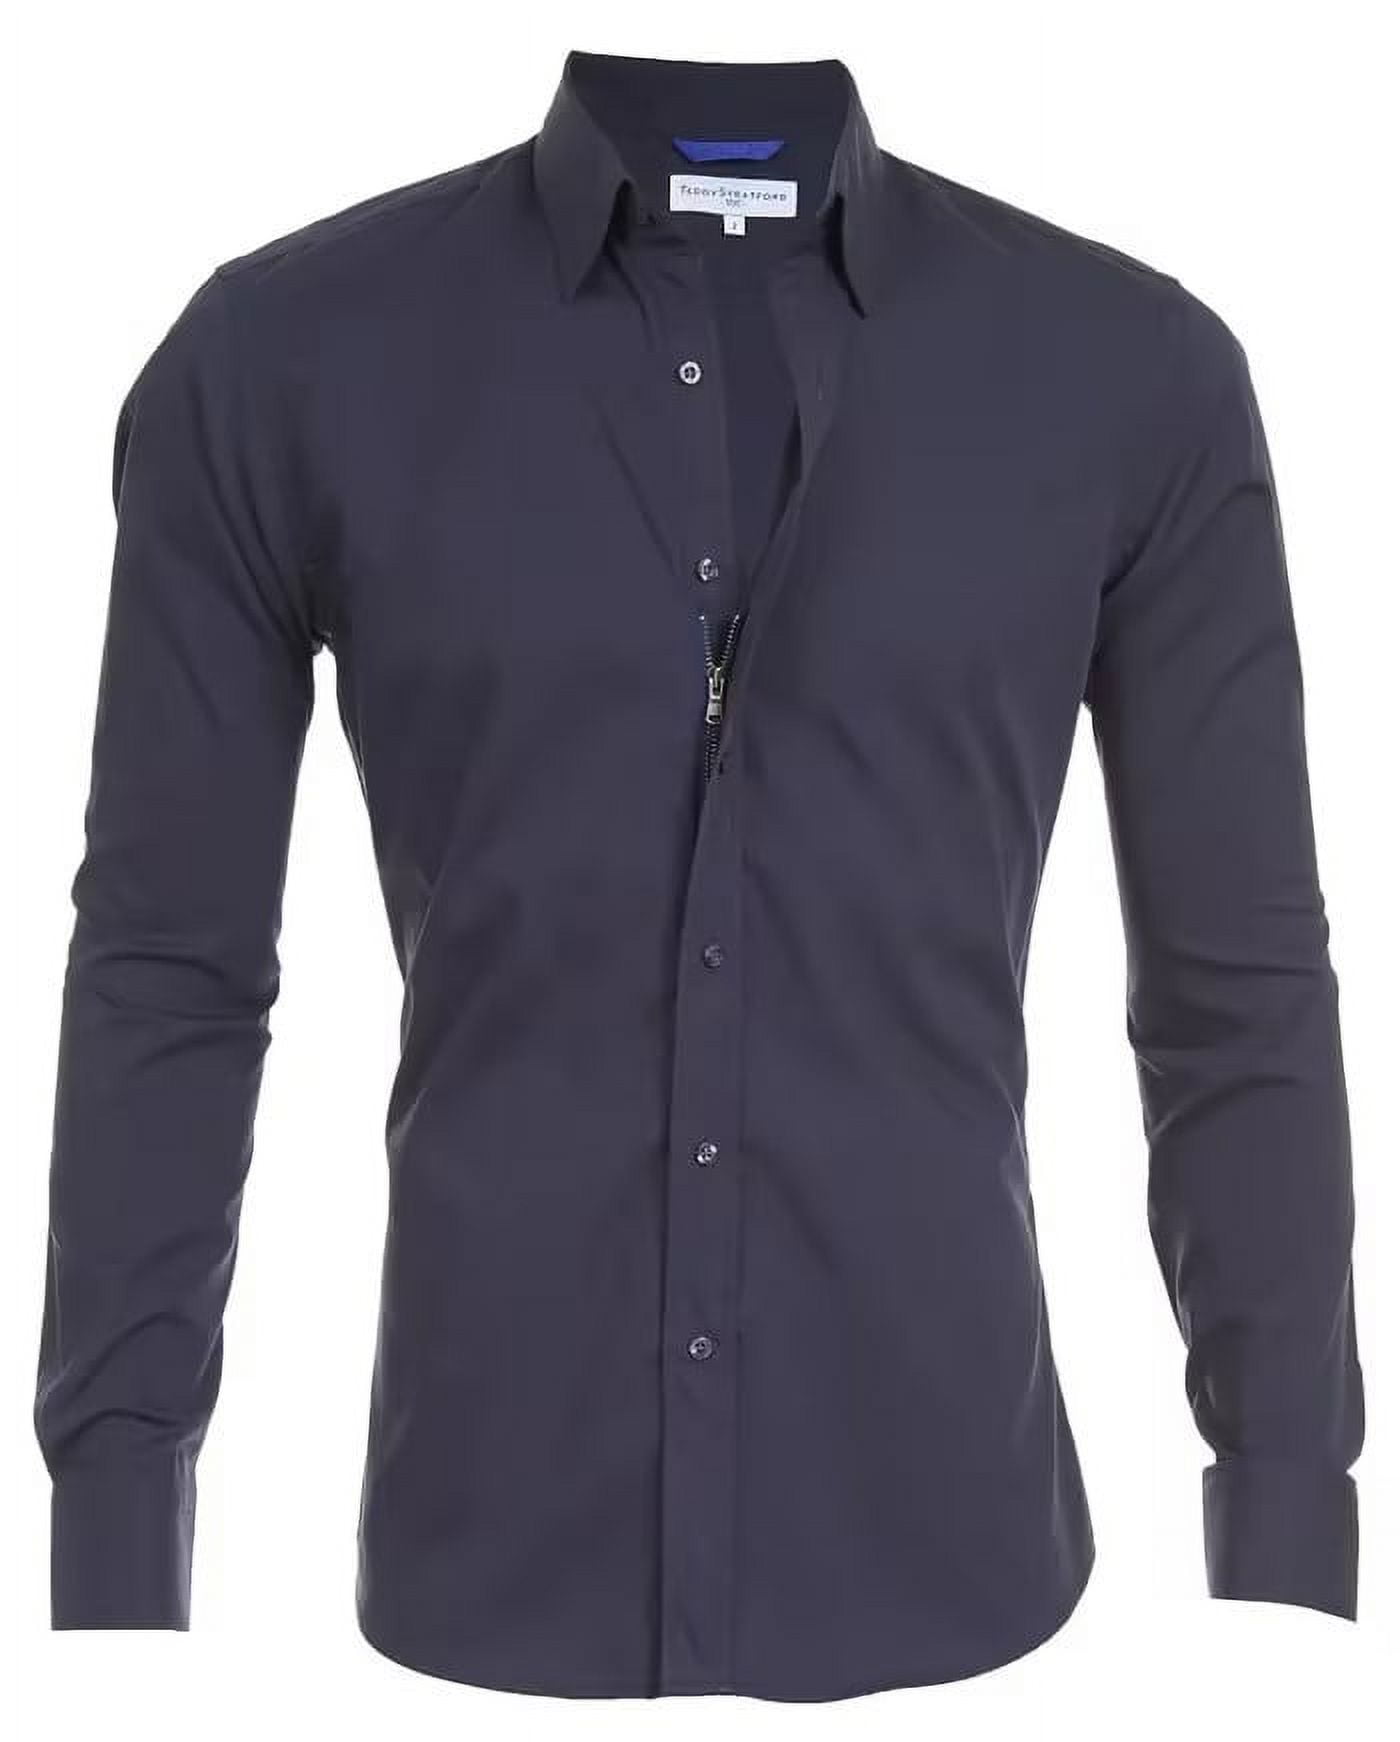 Men's hidden zipper shirt with fake buttons Oxford stretch cotton shirt ...